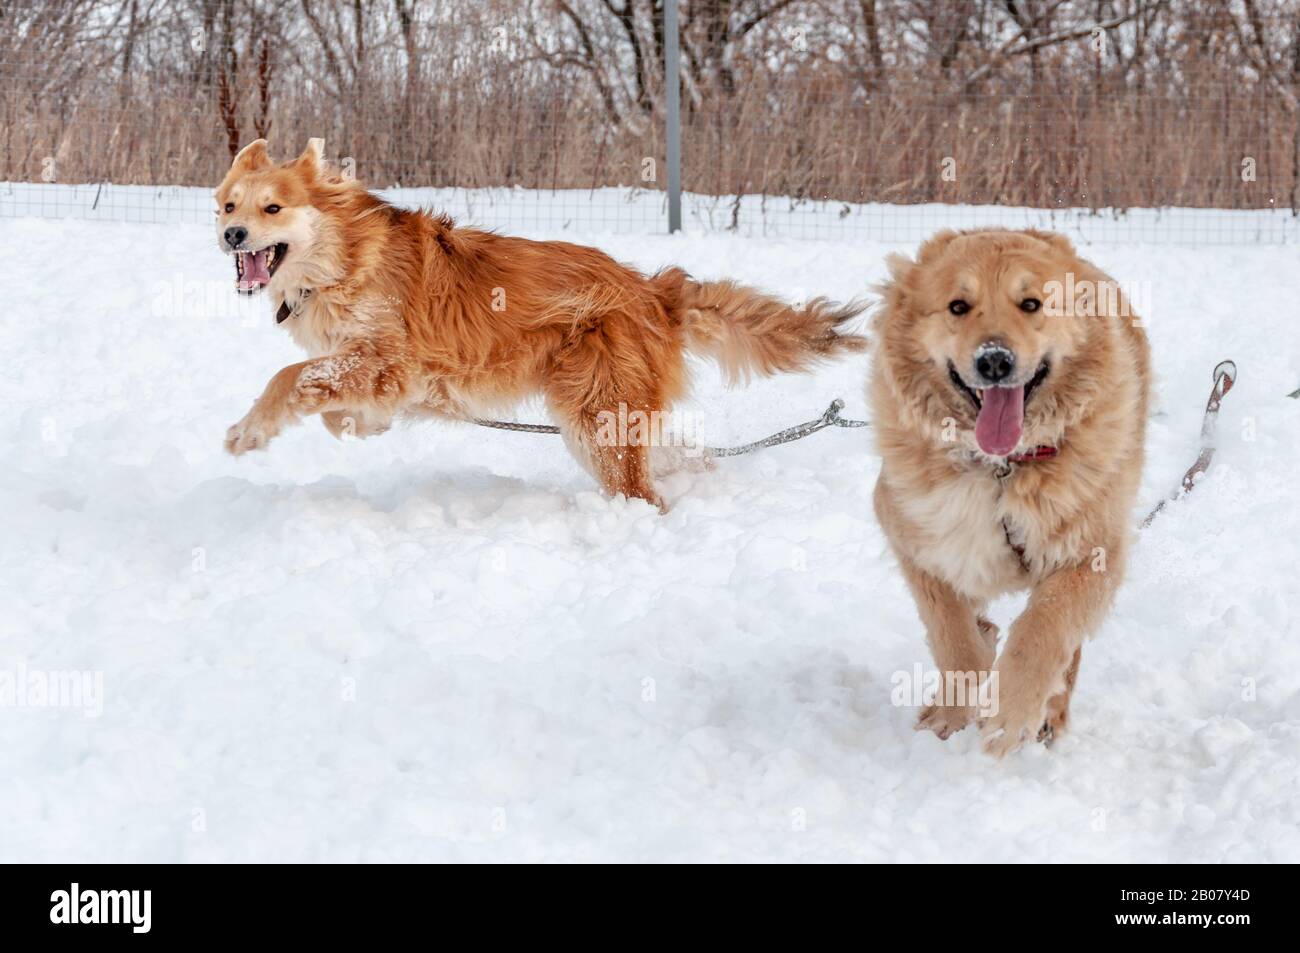 Große süße und schöne rote Hunde spielen glücklich miteinander, laufen auf der schneebedeckten Fläche und genießen einen Spaziergang im Freien an einem schönen Wintertag Stockfoto